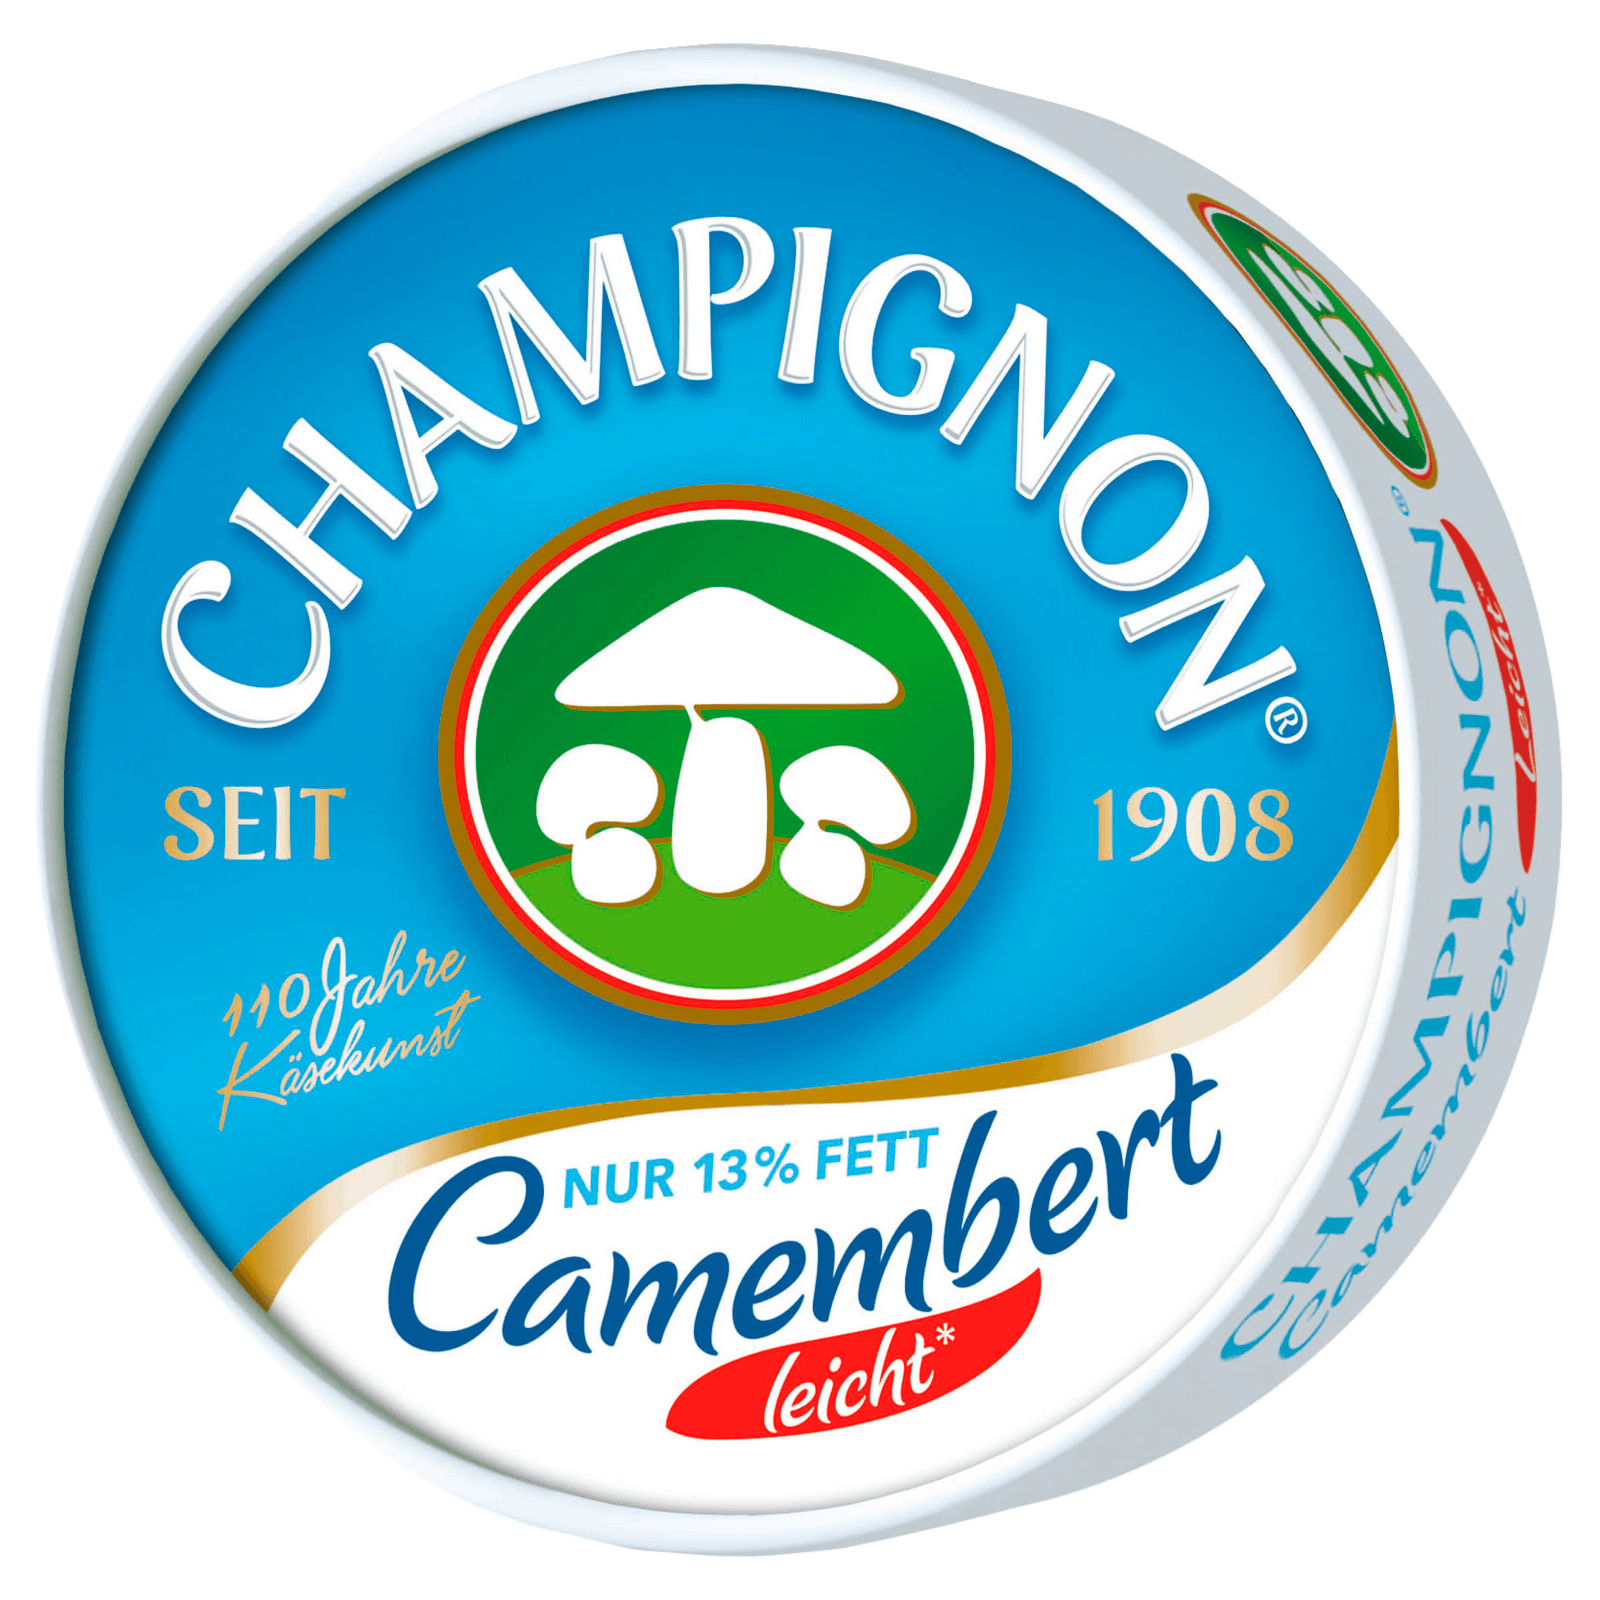 Käserei Champignon Camembert leicht 125g  für 2.29 EUR